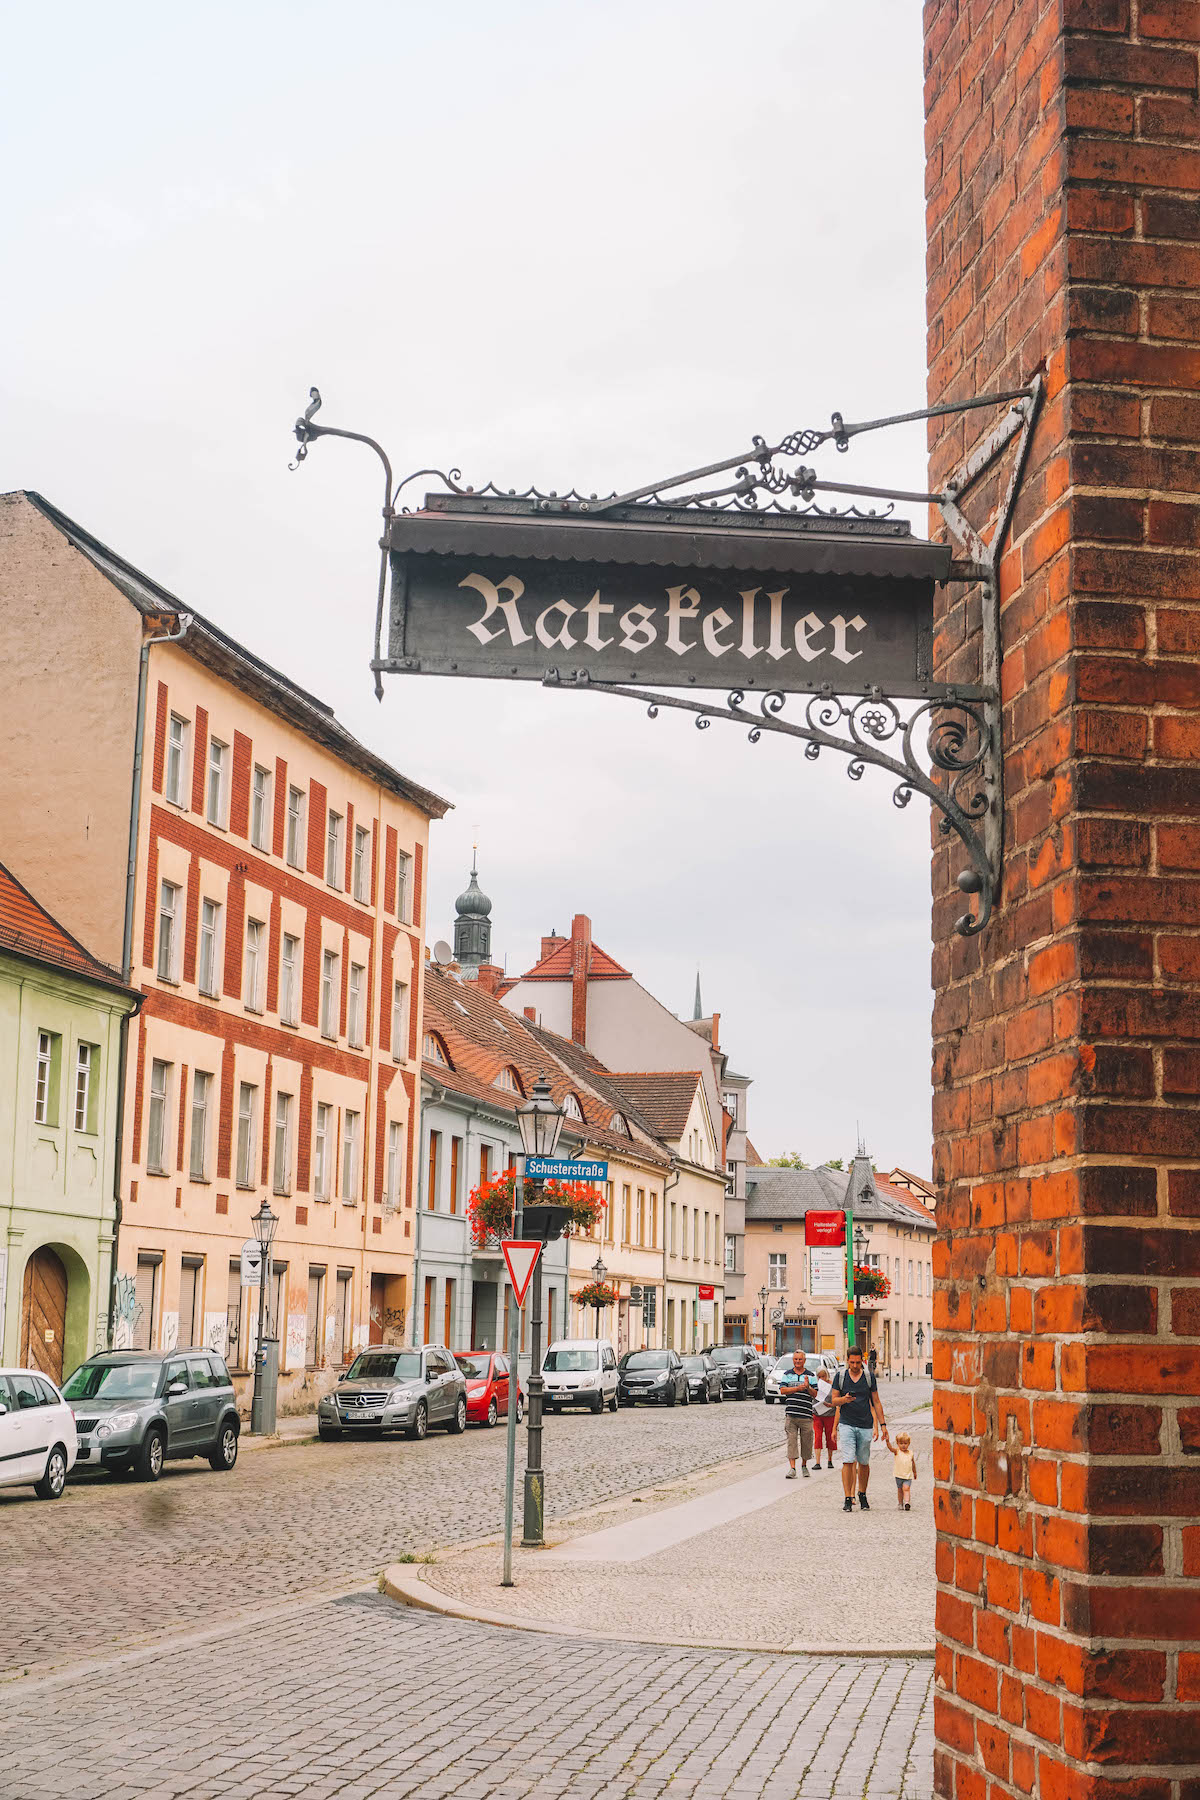 A Rathskeller sign in Brandenburg an der Havel.